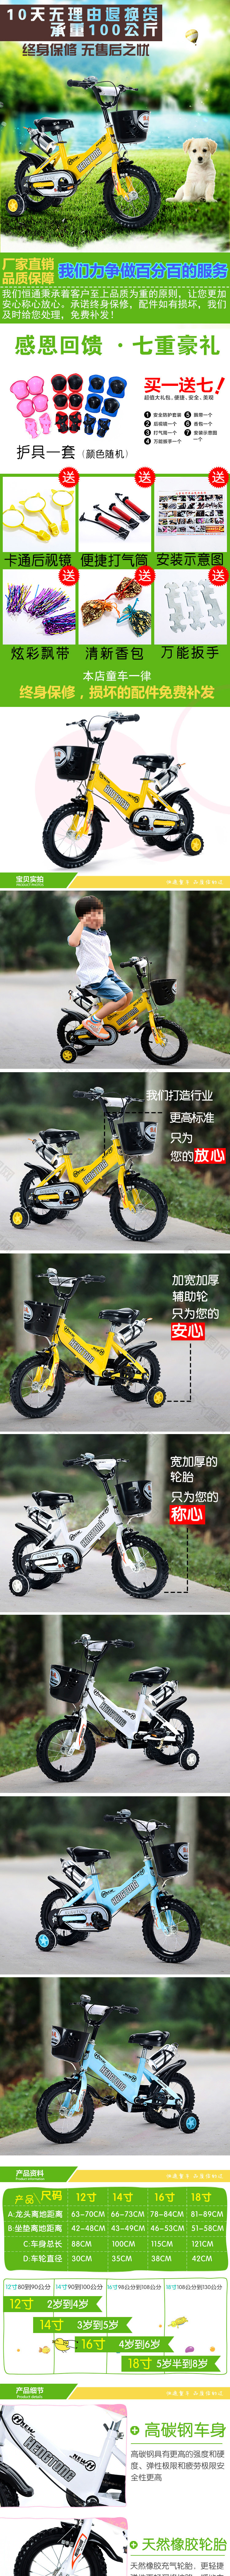 运动黄色款儿童自行车详情页